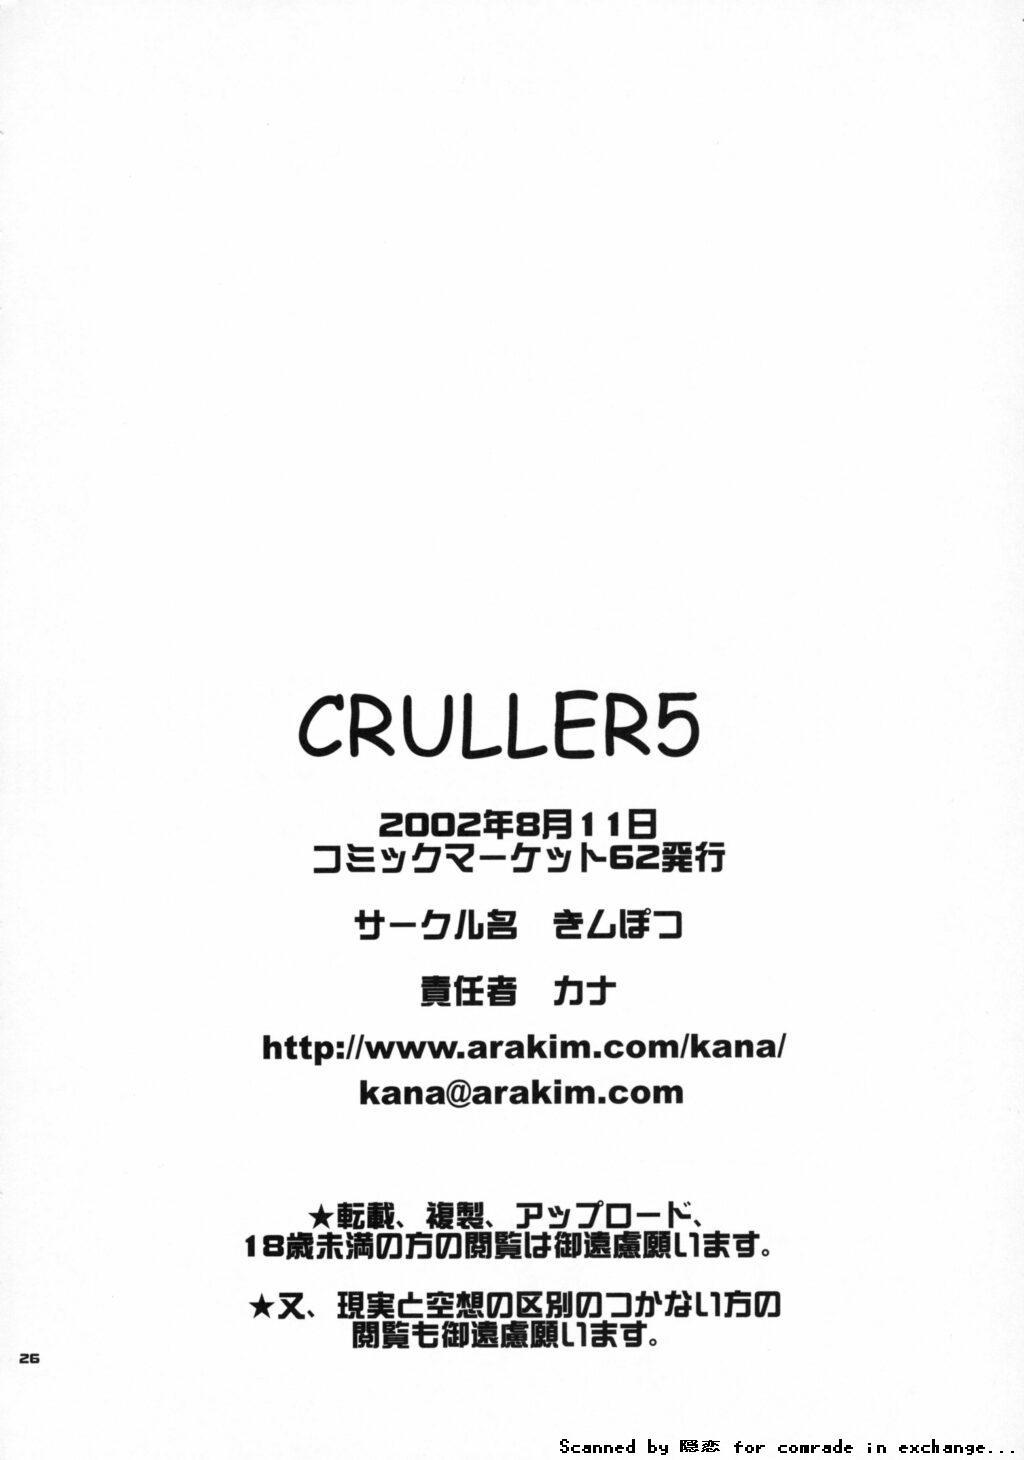 Cruller 5 24